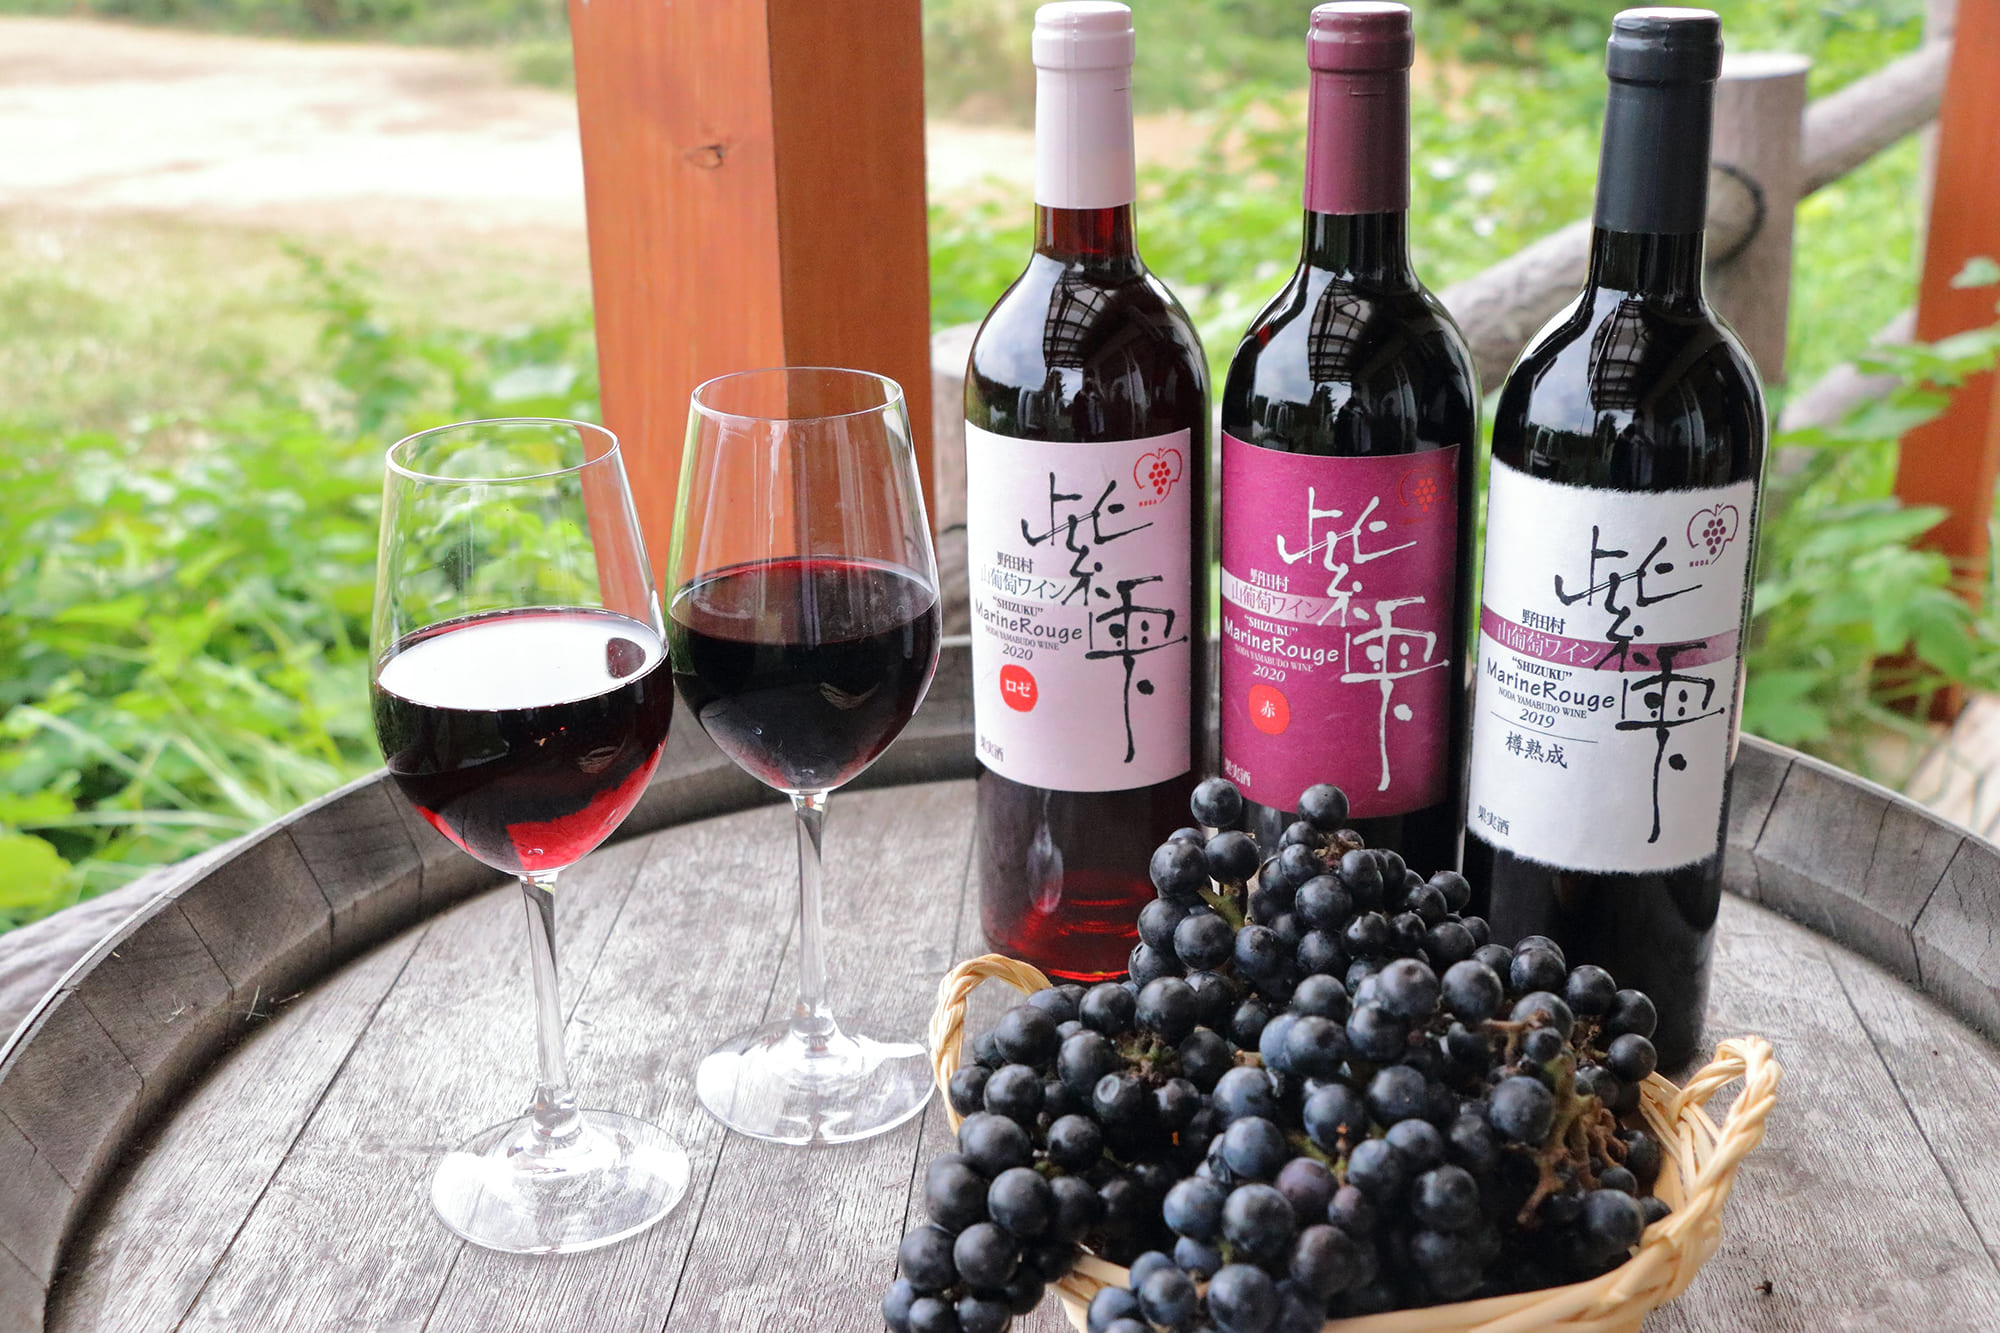 ジャムのような果実味と、ヤマブドウ本来の酸味をしっかりと感じられる野田村のワイン